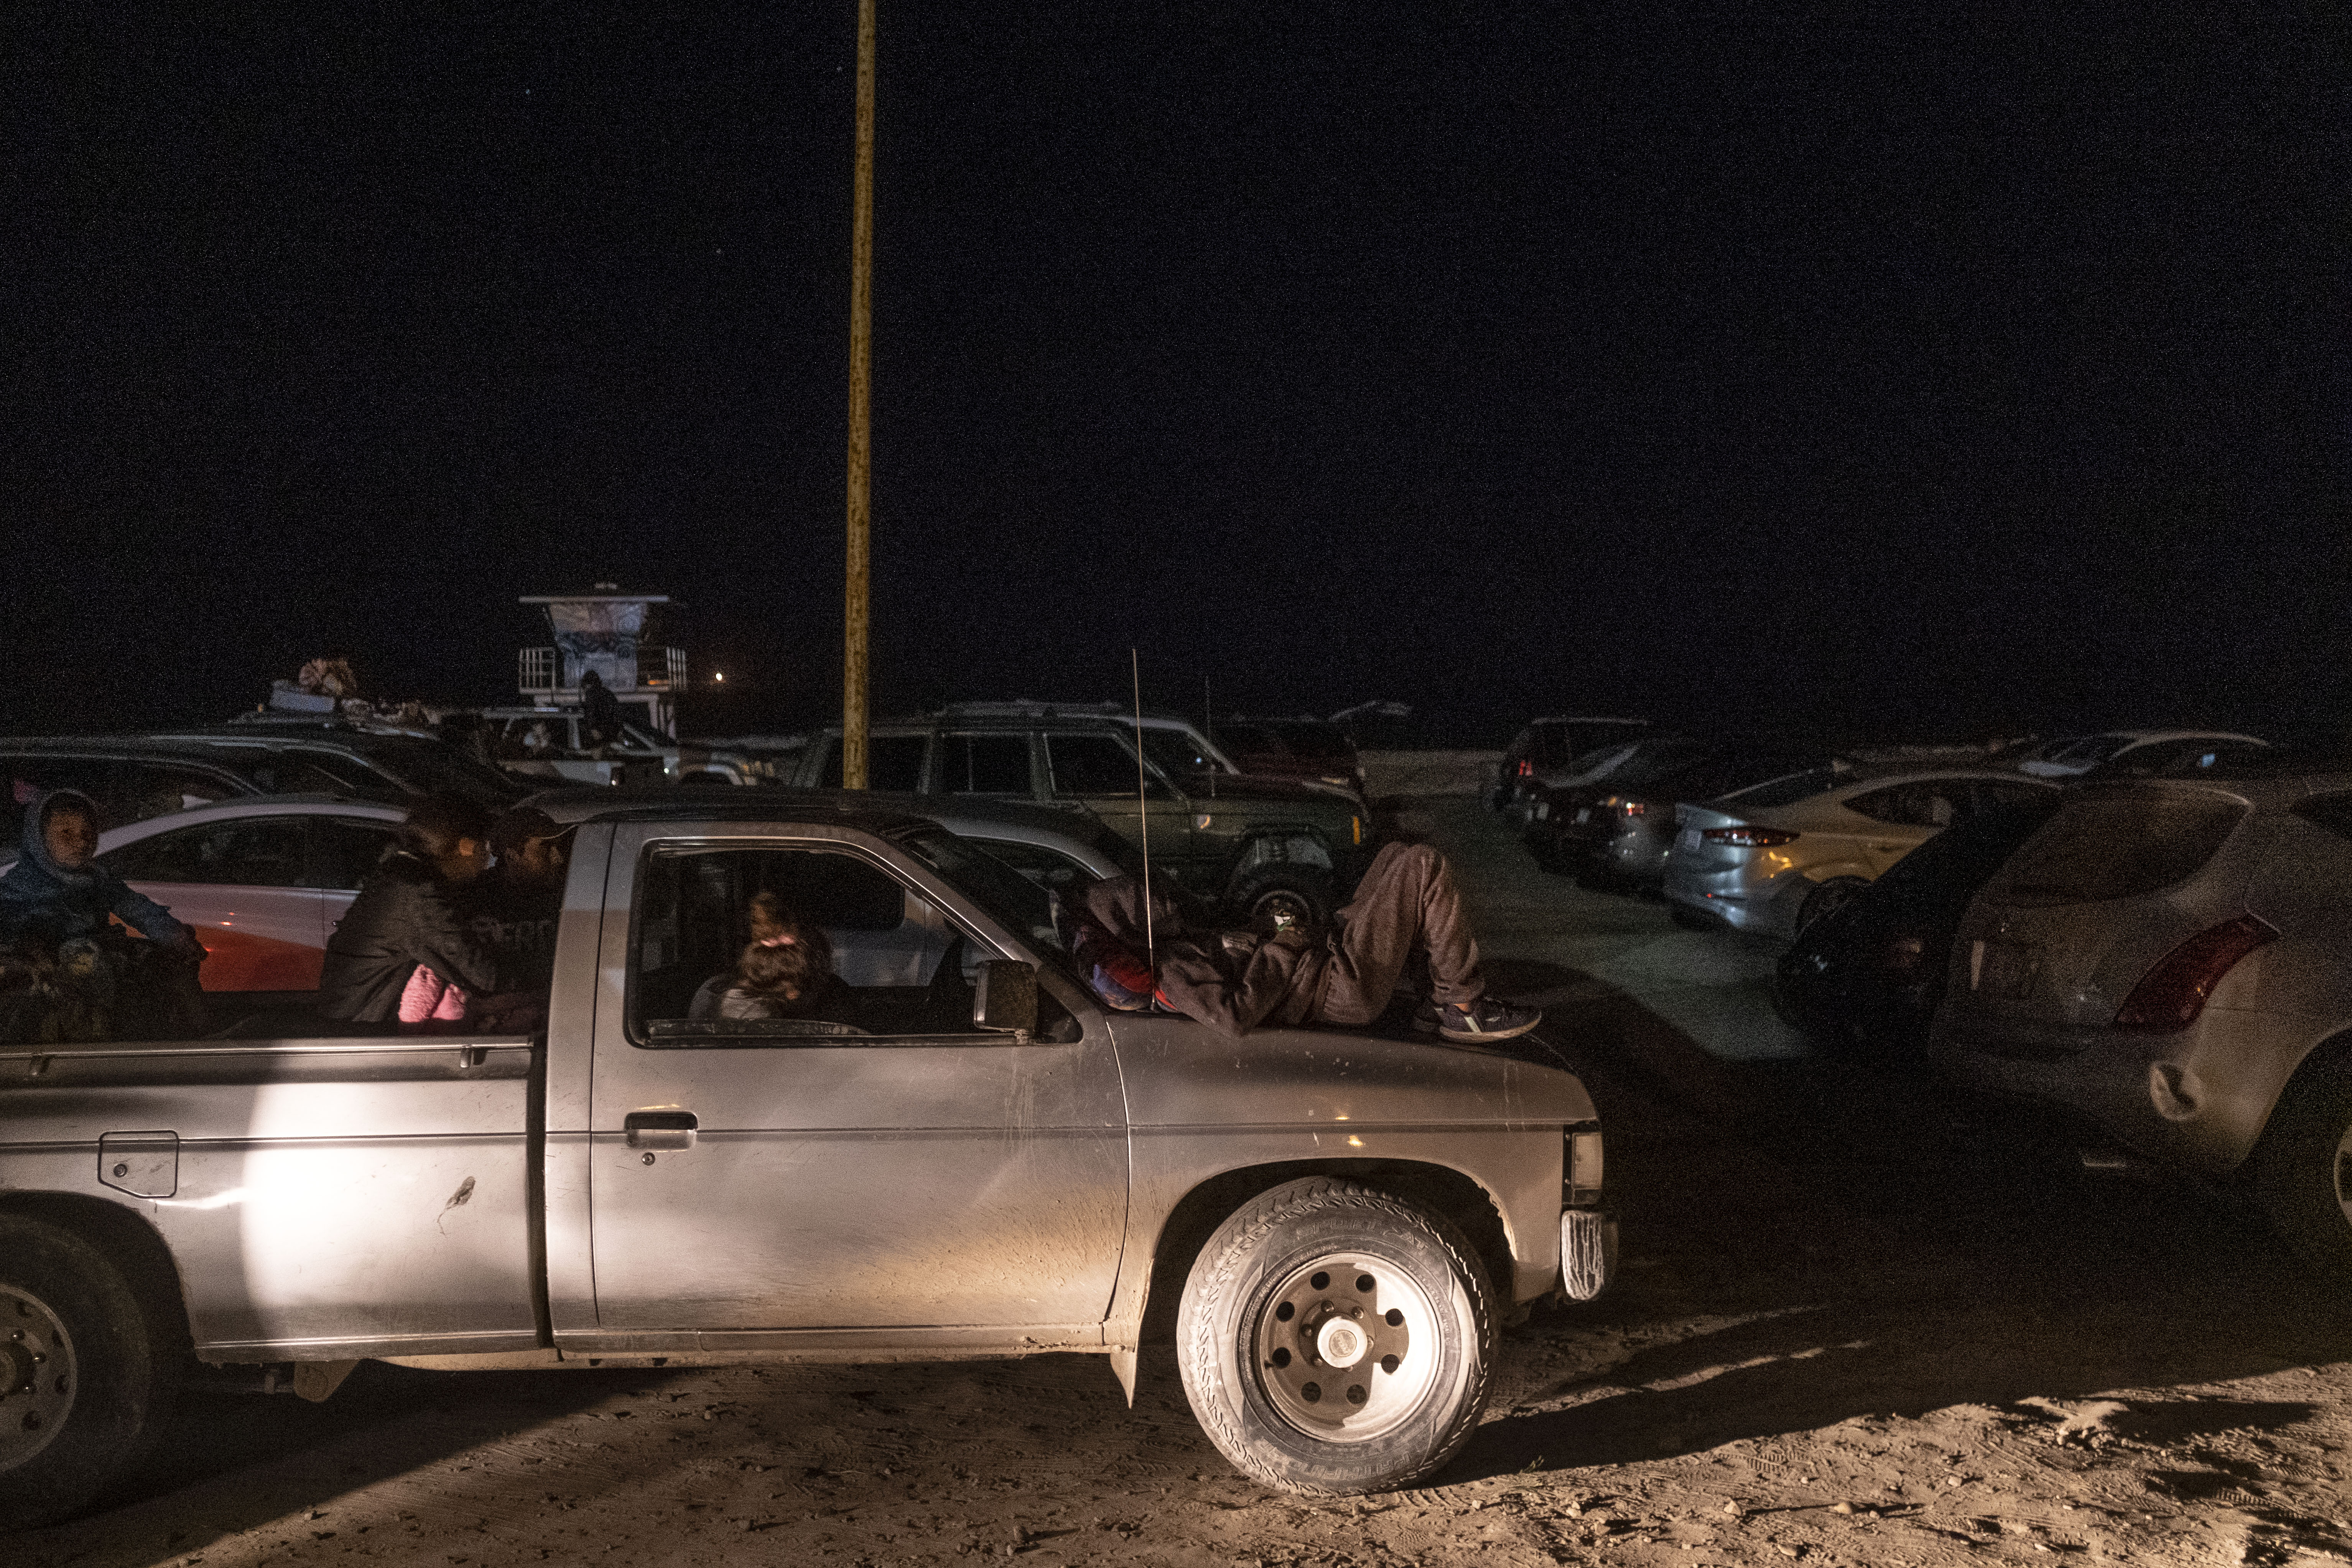 La gente asiste a un autocine en la playa en Playas de Rosarito, estado de Baja California, México, el 17 de julio de 2020, en medio de la nueva pandemia de coronavirus. (Foto de Guillermo Arias / AFP)